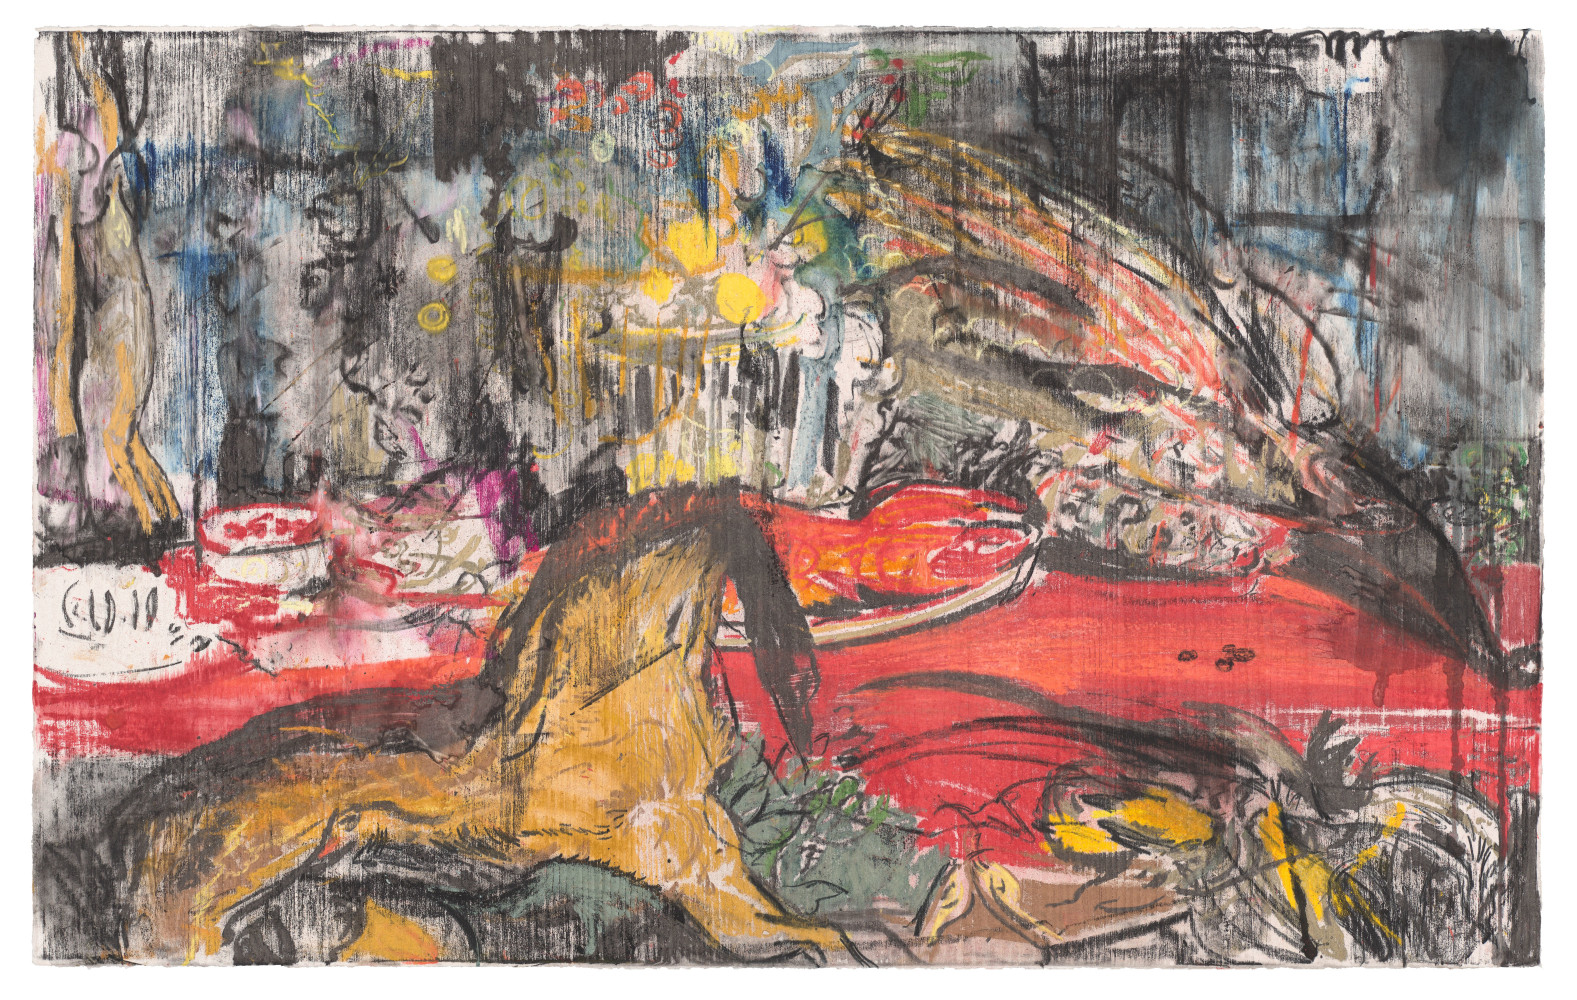 Untitled (Nature Morte after Frans Snyders), 2020